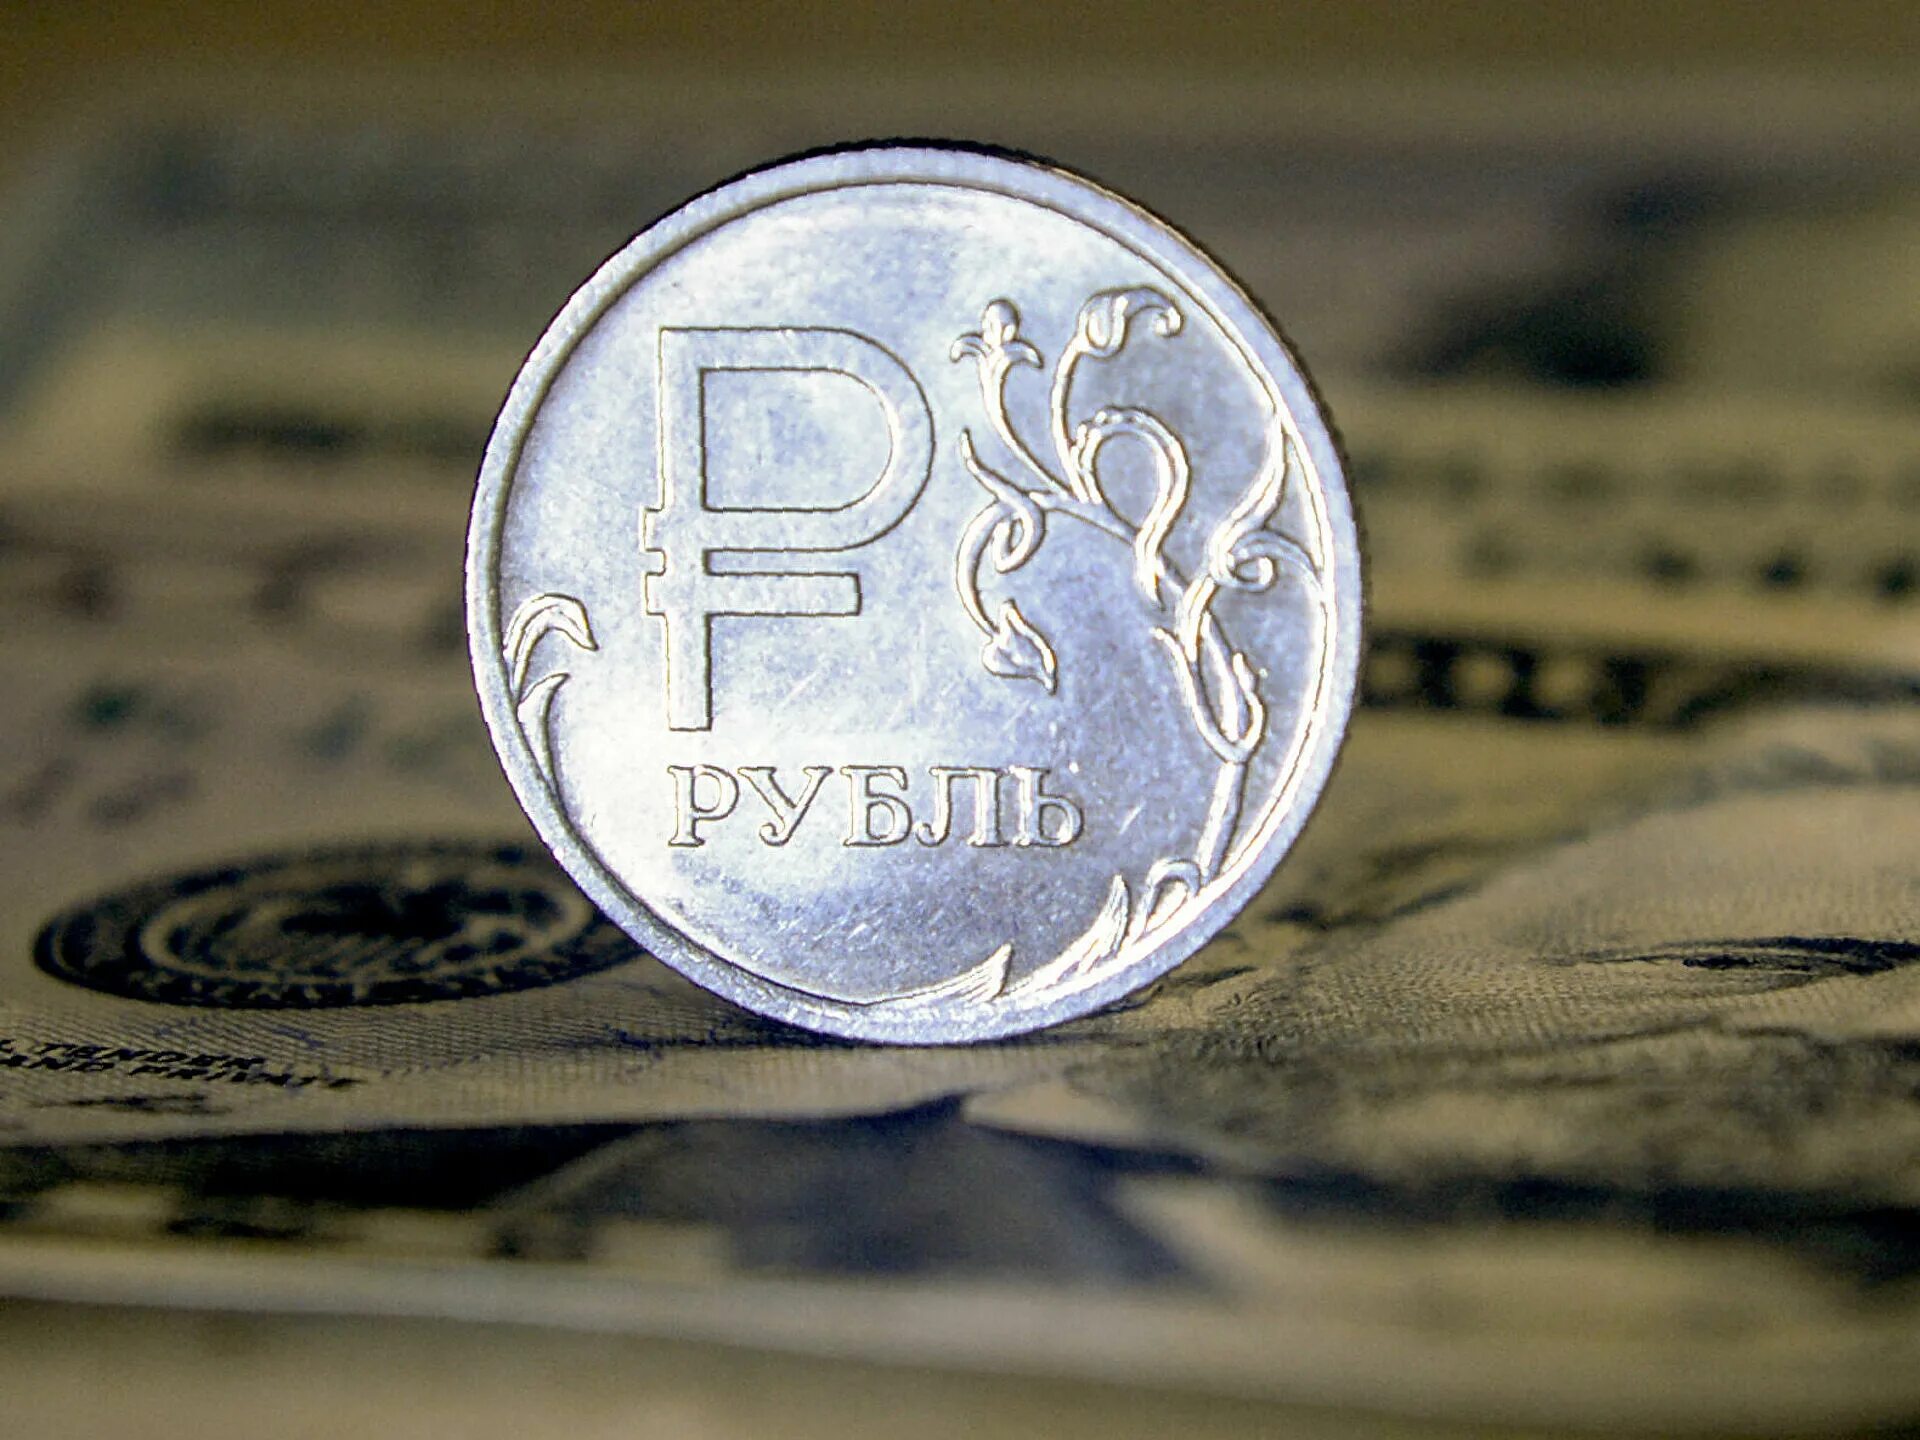 На суму 2 4. Рубль. Валюта рубль. Изображение Российской валюты. Национальная валюта России.